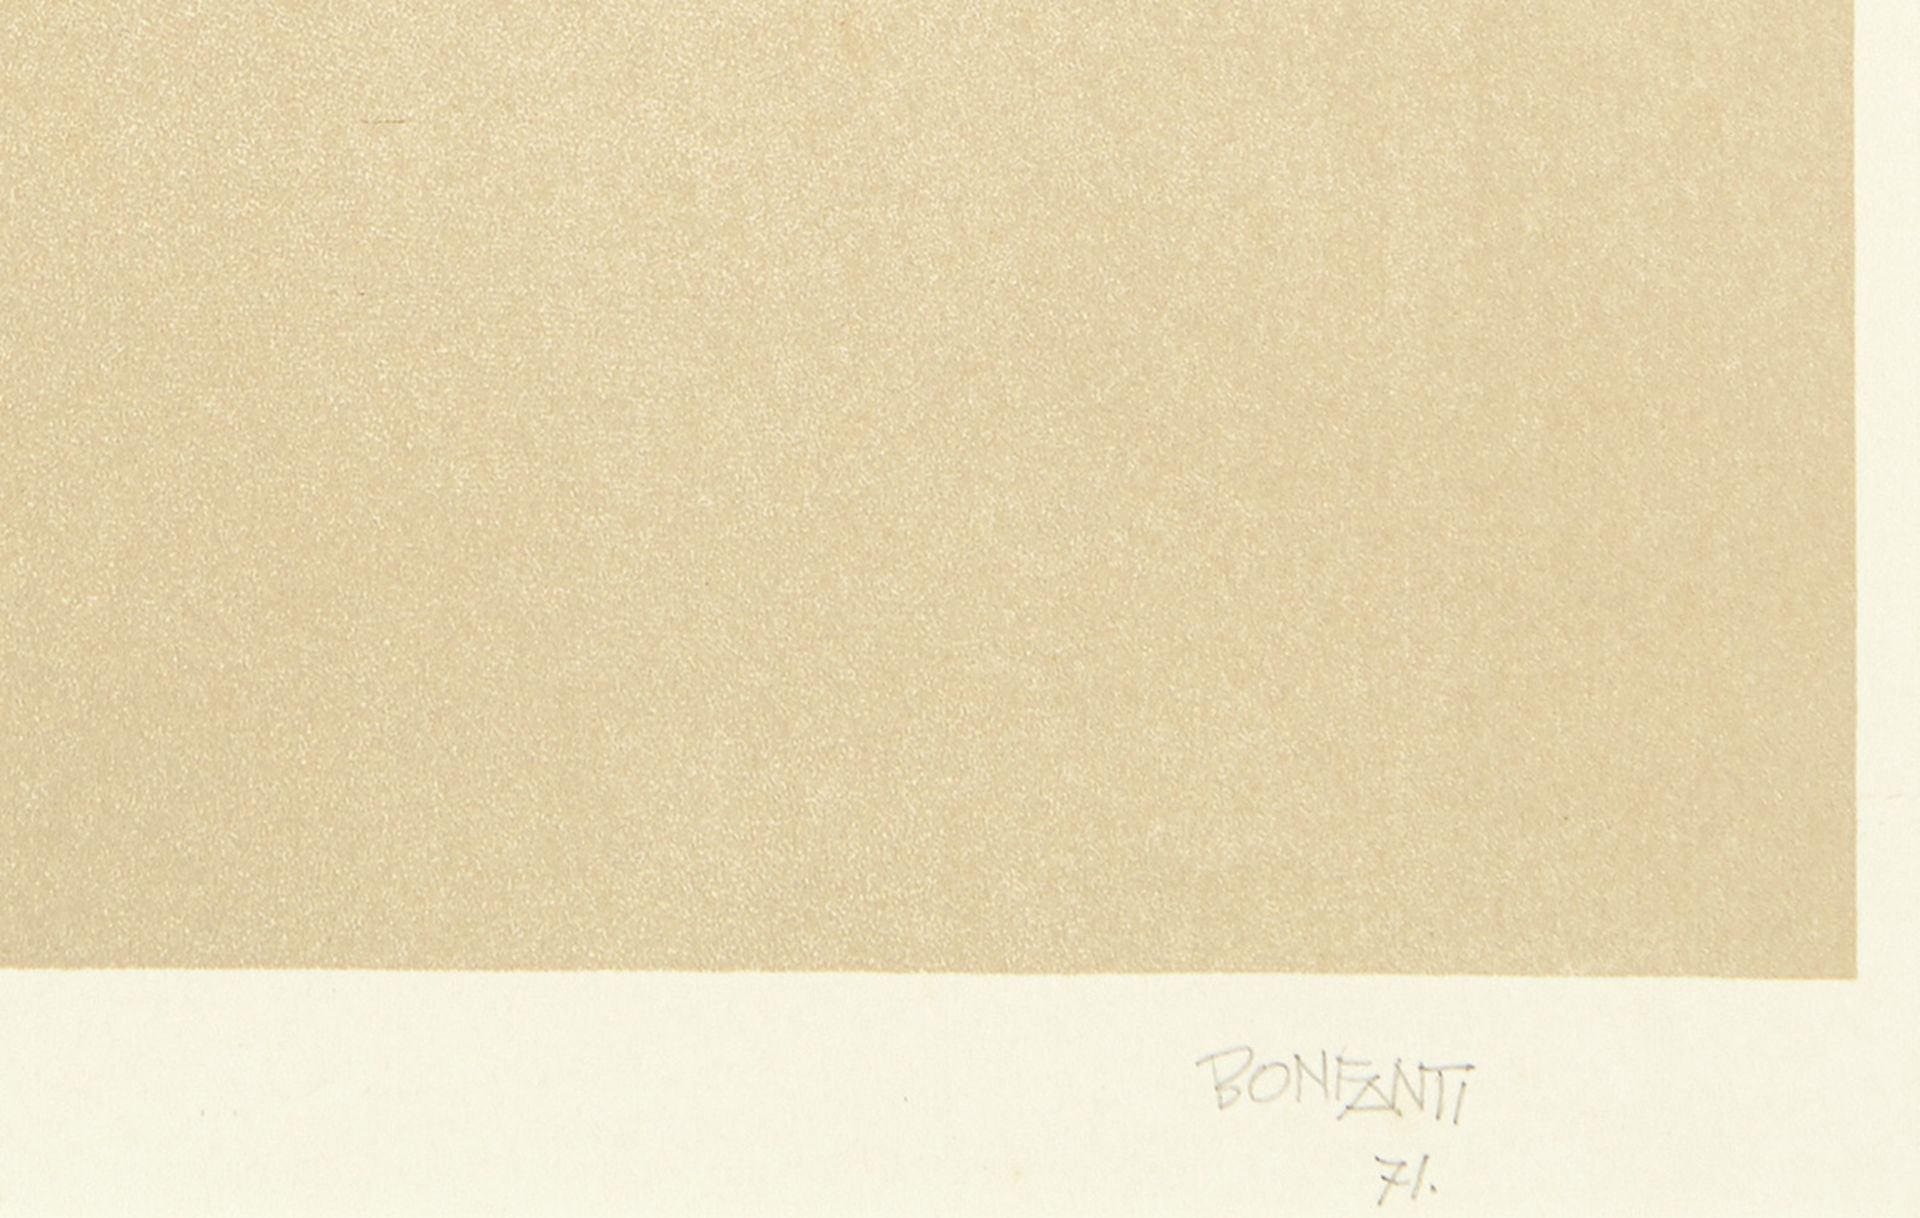 Bonfanti Arturo1905 - 1978 Bergamo"Italia". Farblithografie auf Büttenpapier. 27/28. Signiert. - Bild 2 aus 3